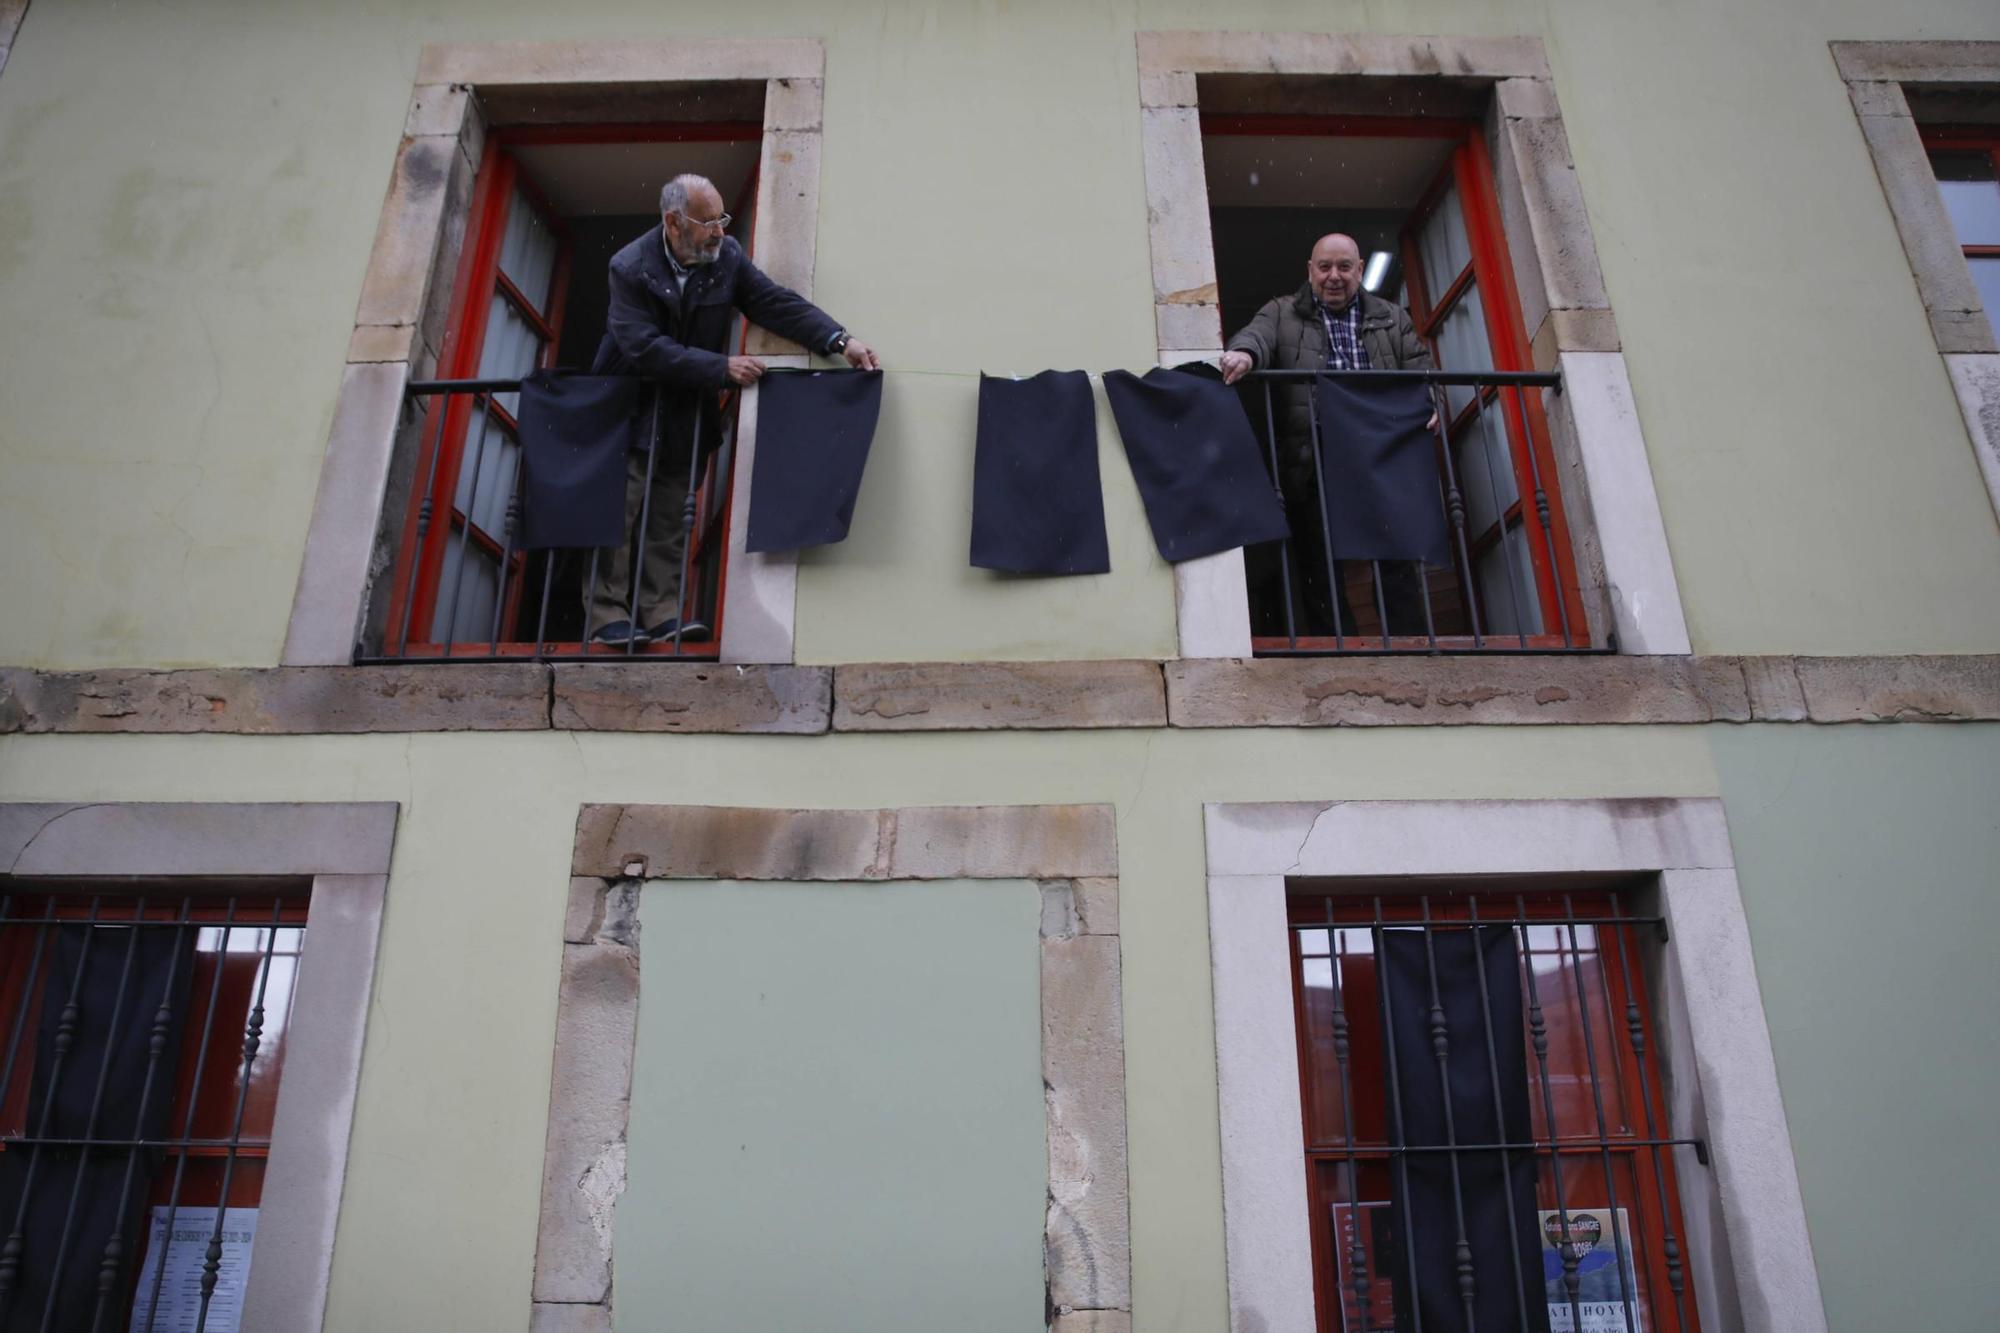 La protesta de los trapos negros se intensifica en la zona Oeste de Gijón (en imágenes)